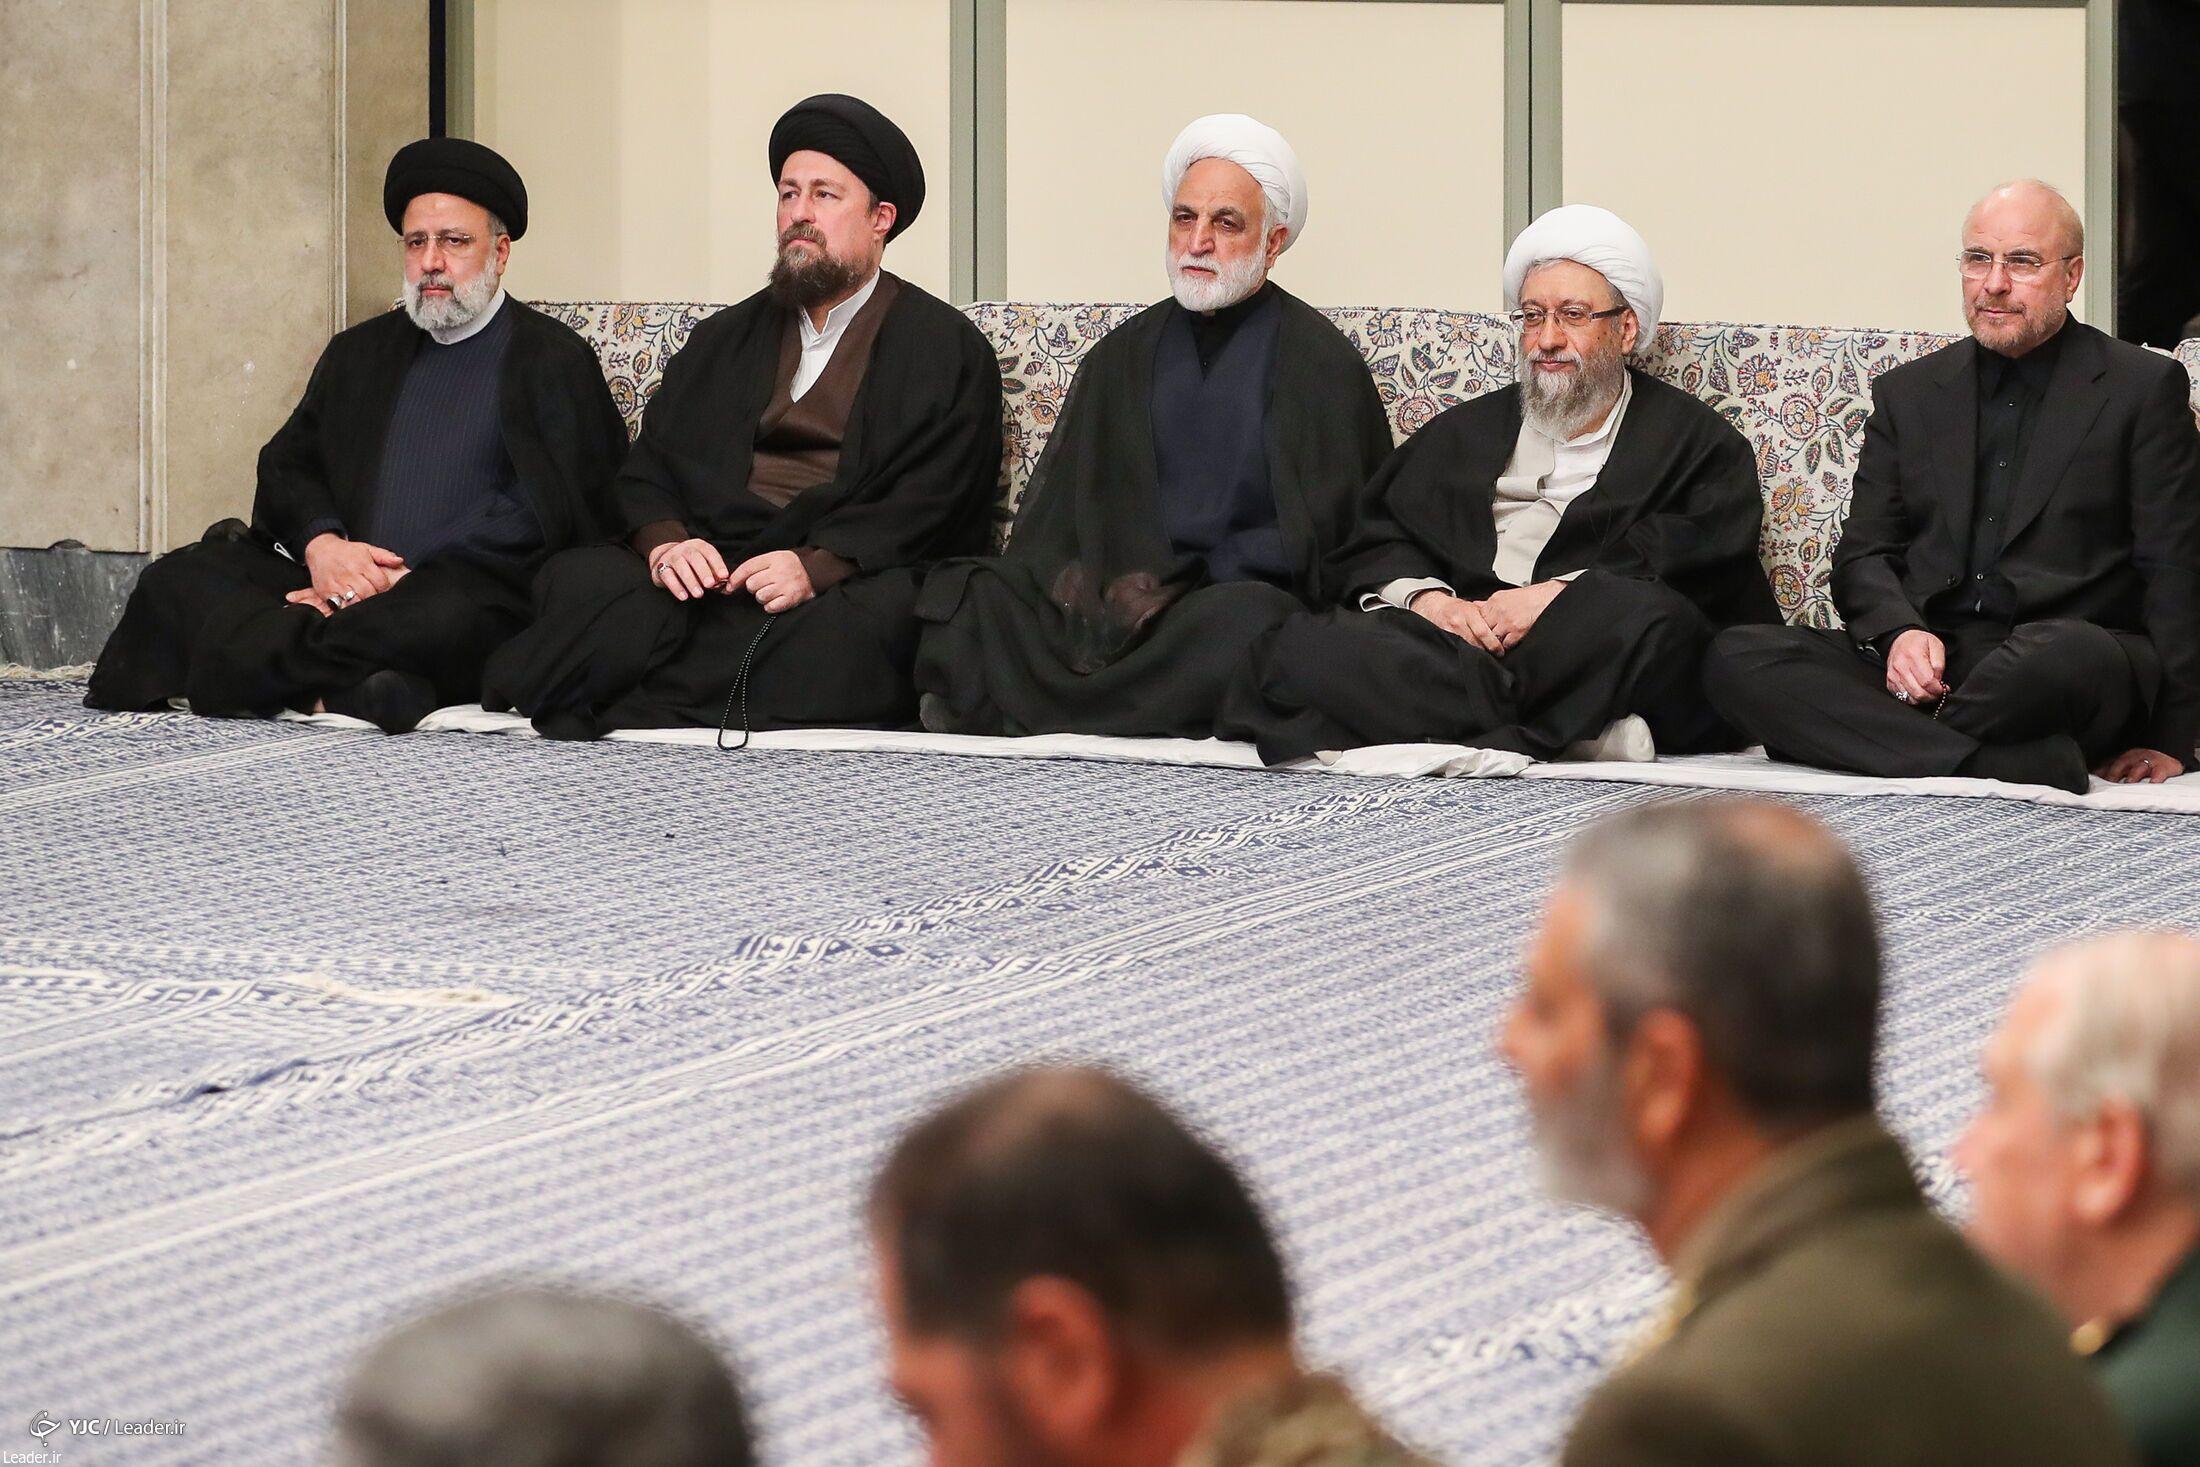 تصاویر: دیدار مسئولان و کارگزاران نظام با مقام معظم رهبری